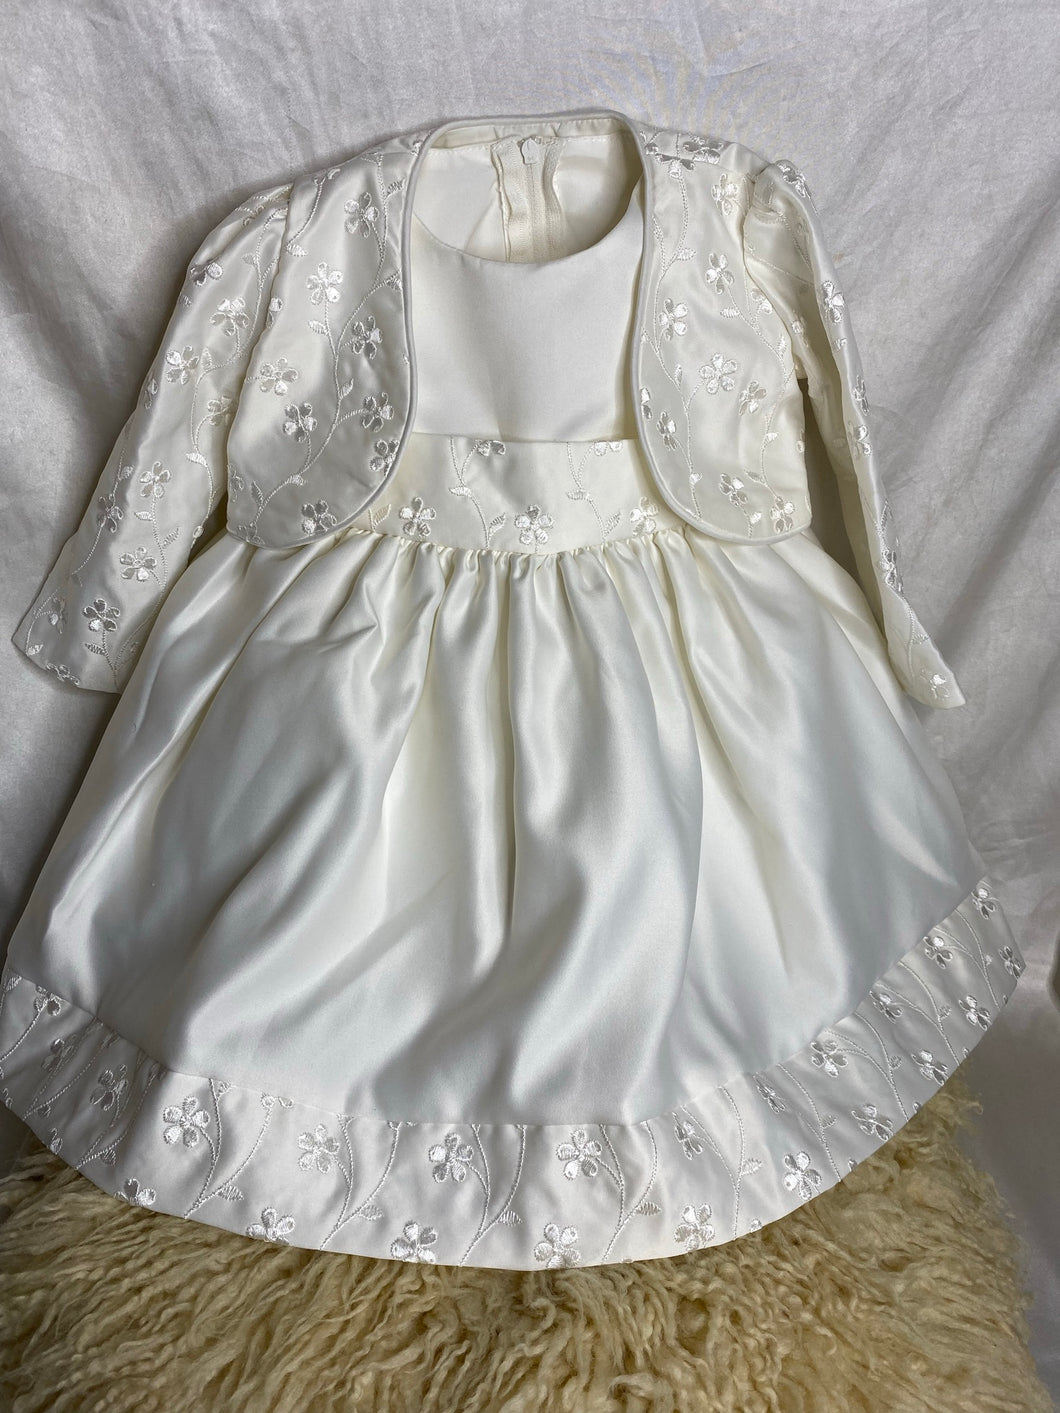 Children's Salon Beautiful Cream Silk Lined Princess Dress - 12 months